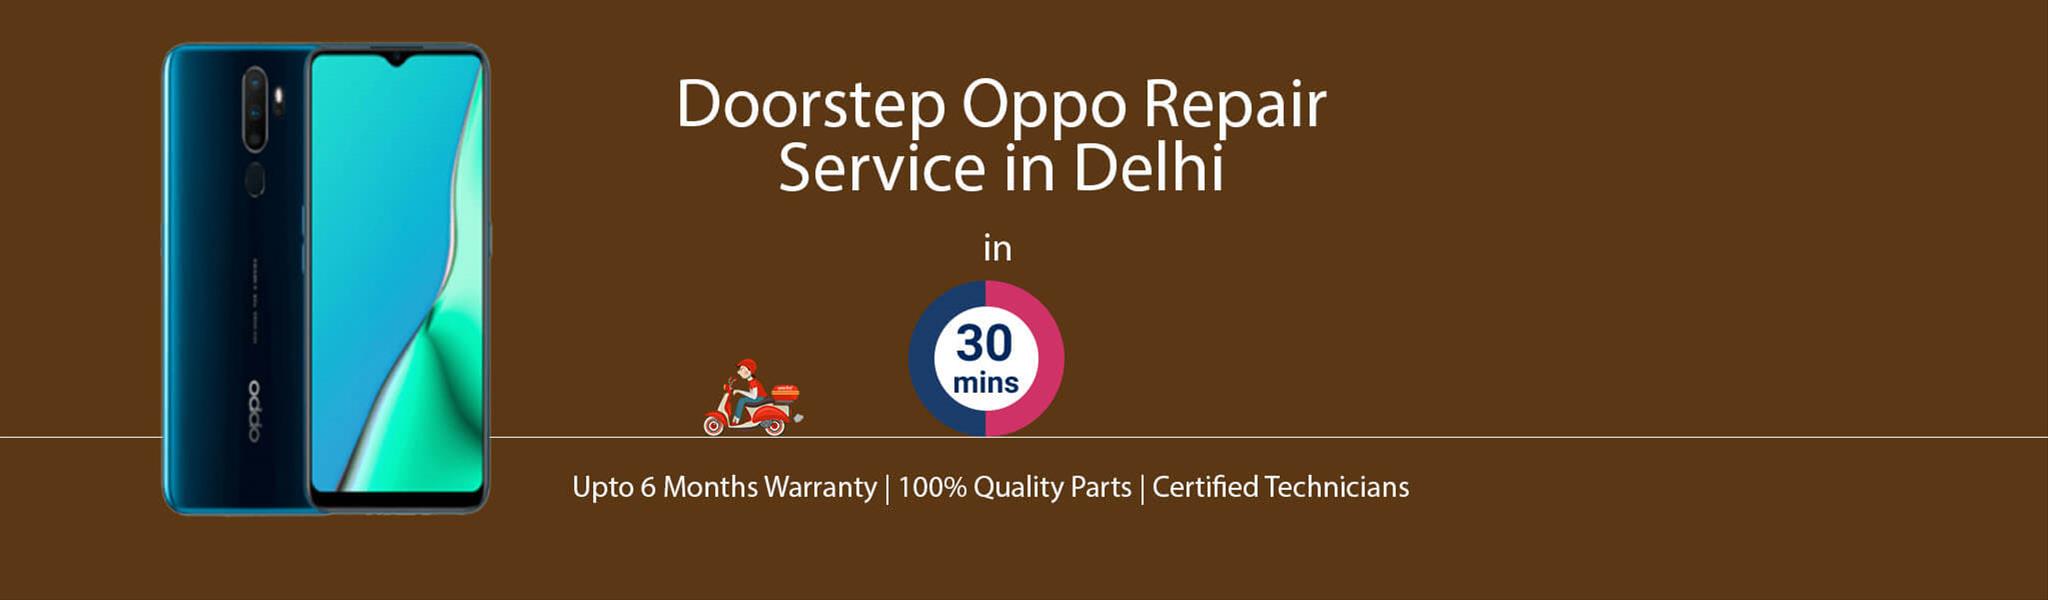 oppo-repair-service-banner-delhi.jpg